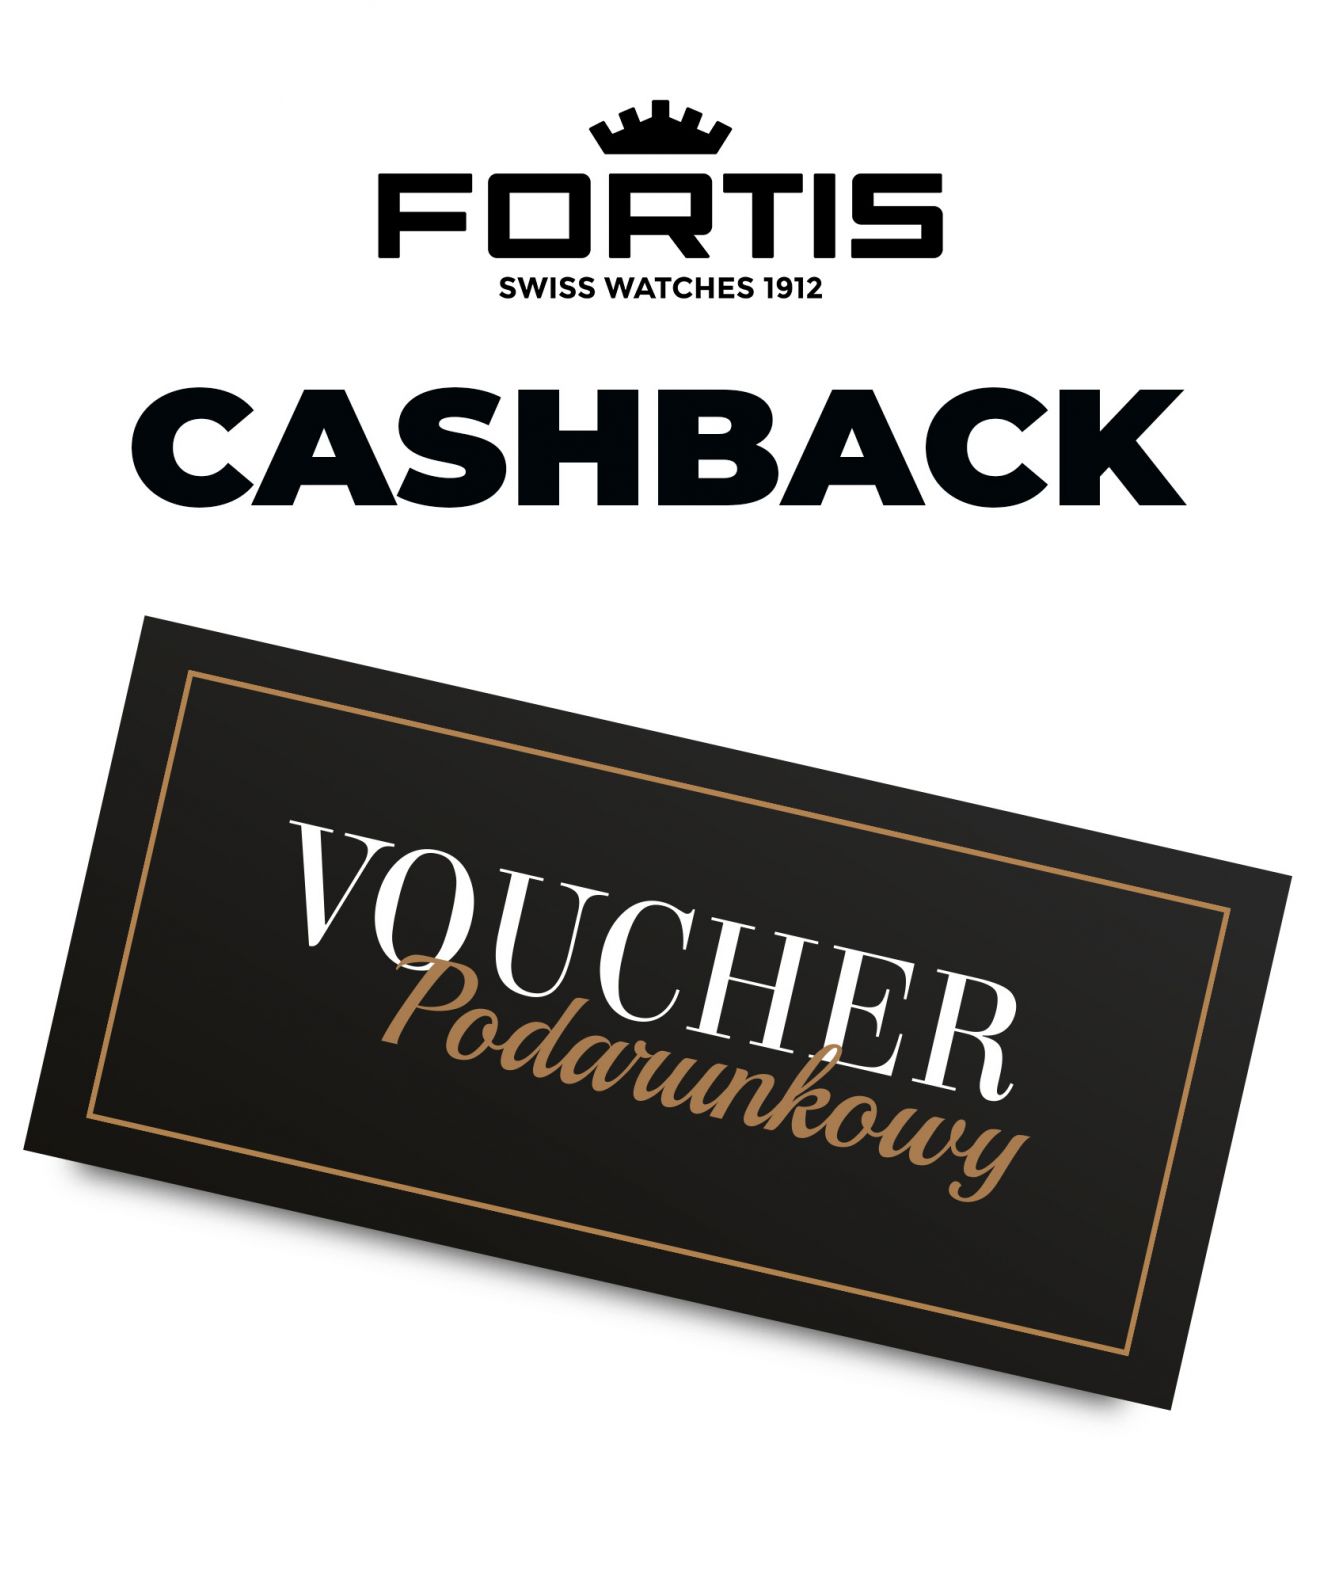 Cashback z Fortis - voucher 3490 zł Cashback Forits